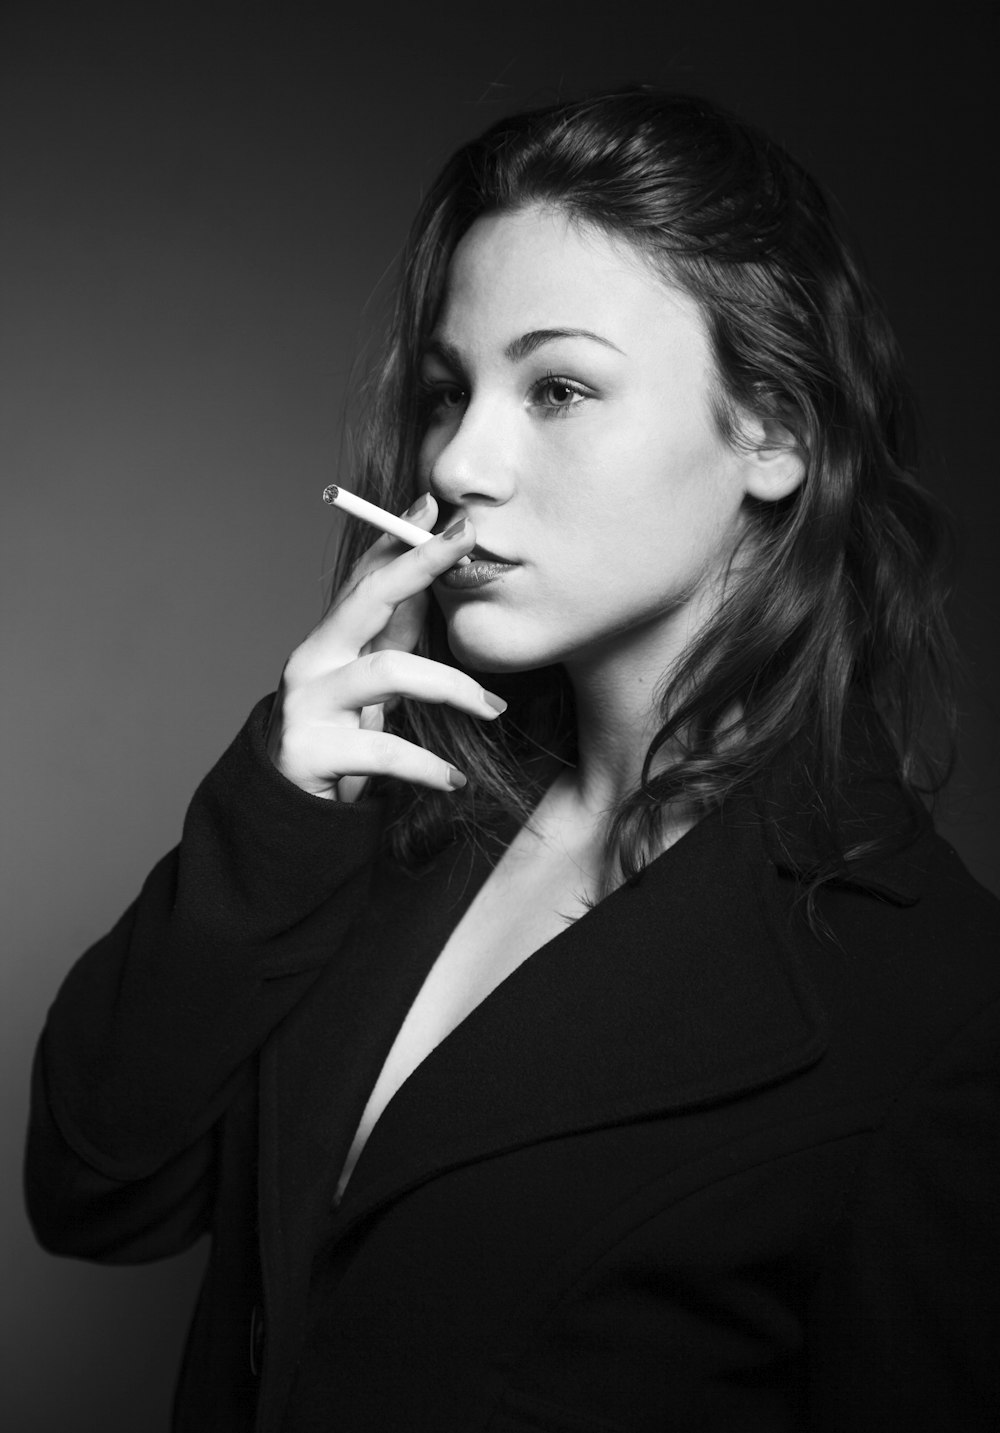 woman wearing black blazer smoking